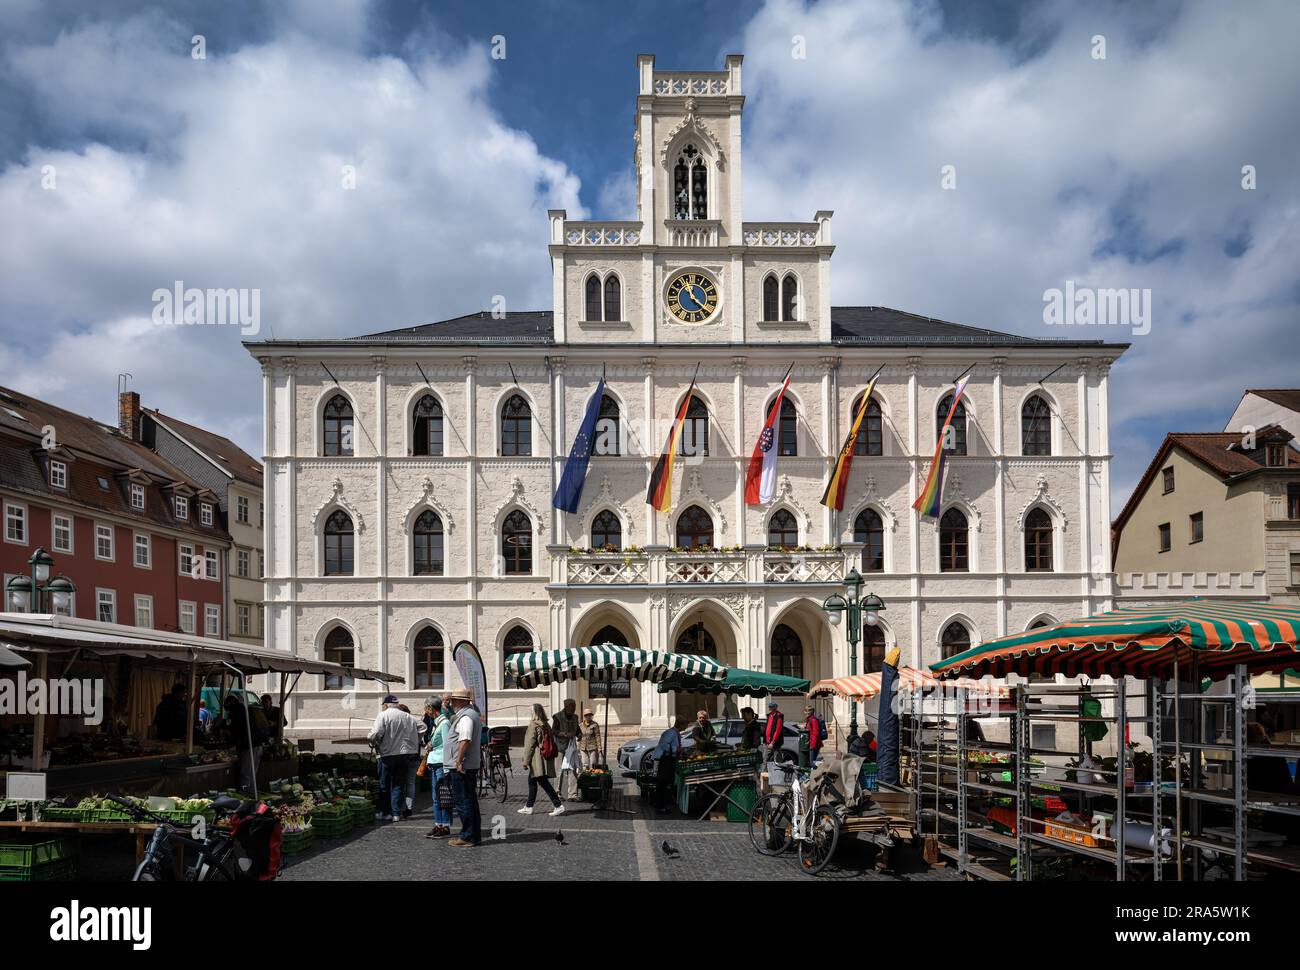 Mercato, bancarelle, storico municipio neogotico, bandiere, piazza del mercato, Weimar, Turingia, Germania Foto Stock